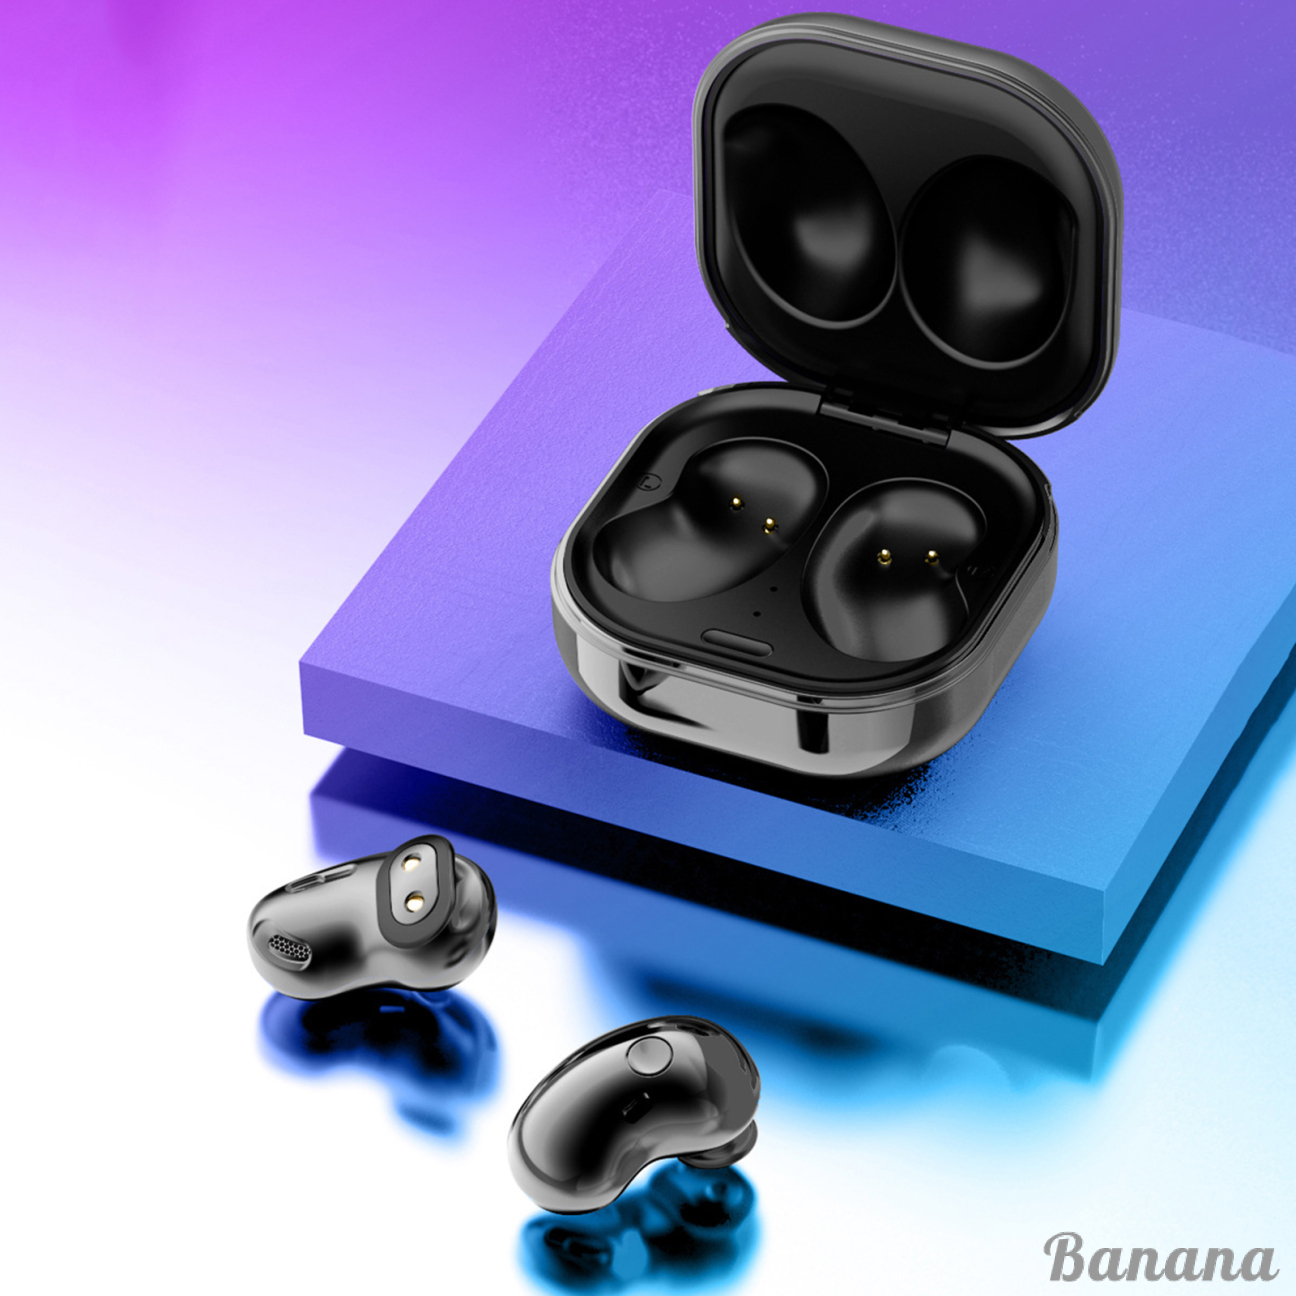 S6 TWS Bluetooth Earphones Wireless in-Ear Earbuds Headphone Earpieces, IPX4 Waterproof